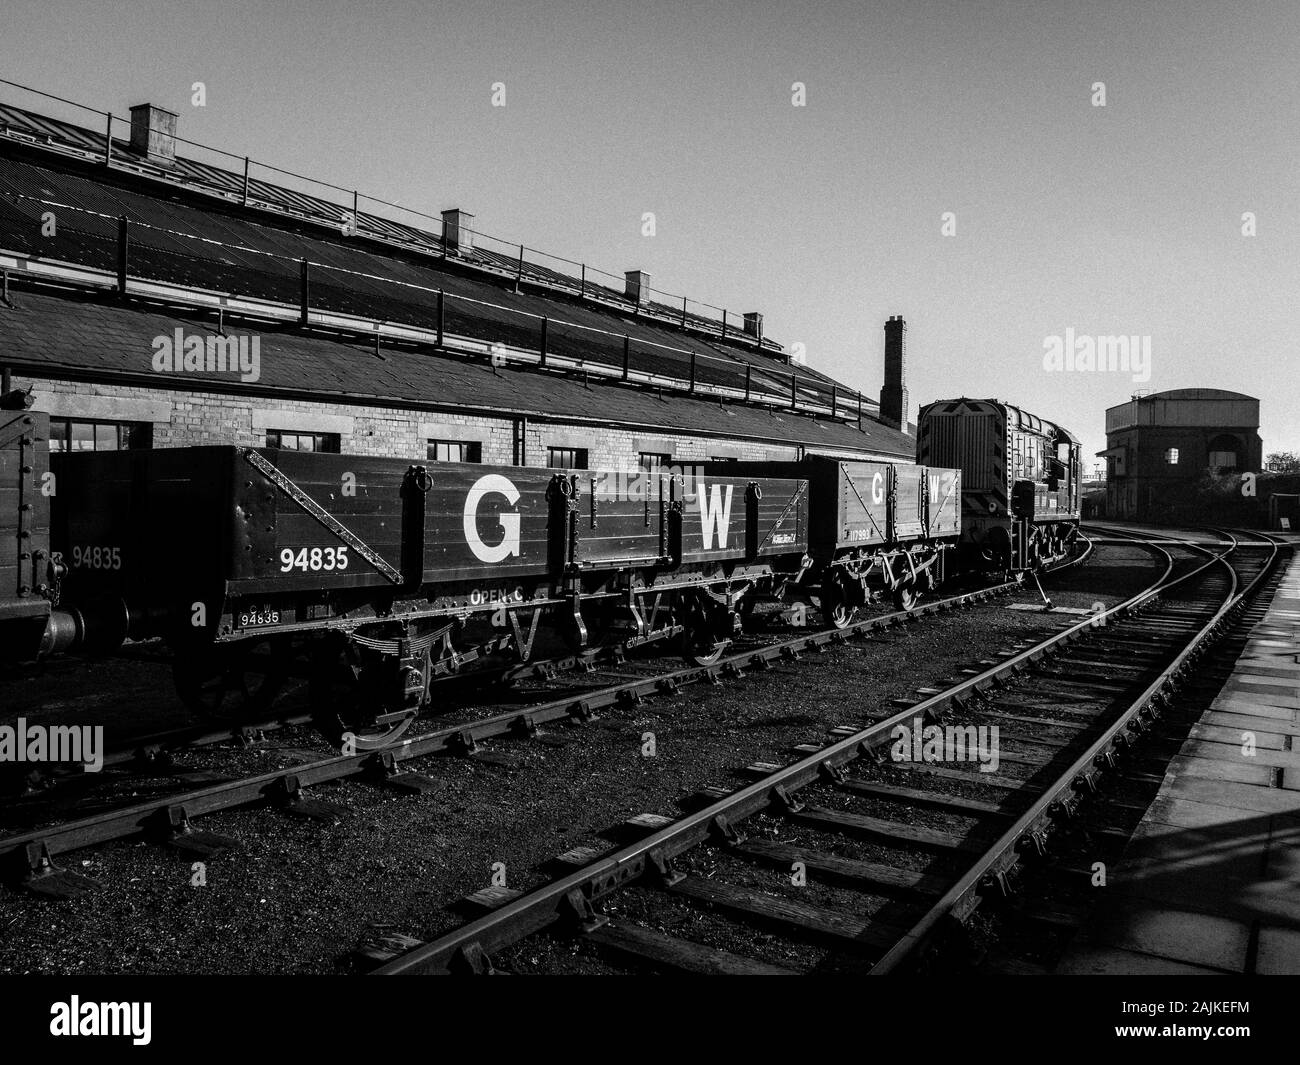 Schwarze und weiße Landschaft der Bahn hof, GWR, GW, Didcot Railway Centre, Didcot, Oxfordshire, England, UK, GB. Stockfoto